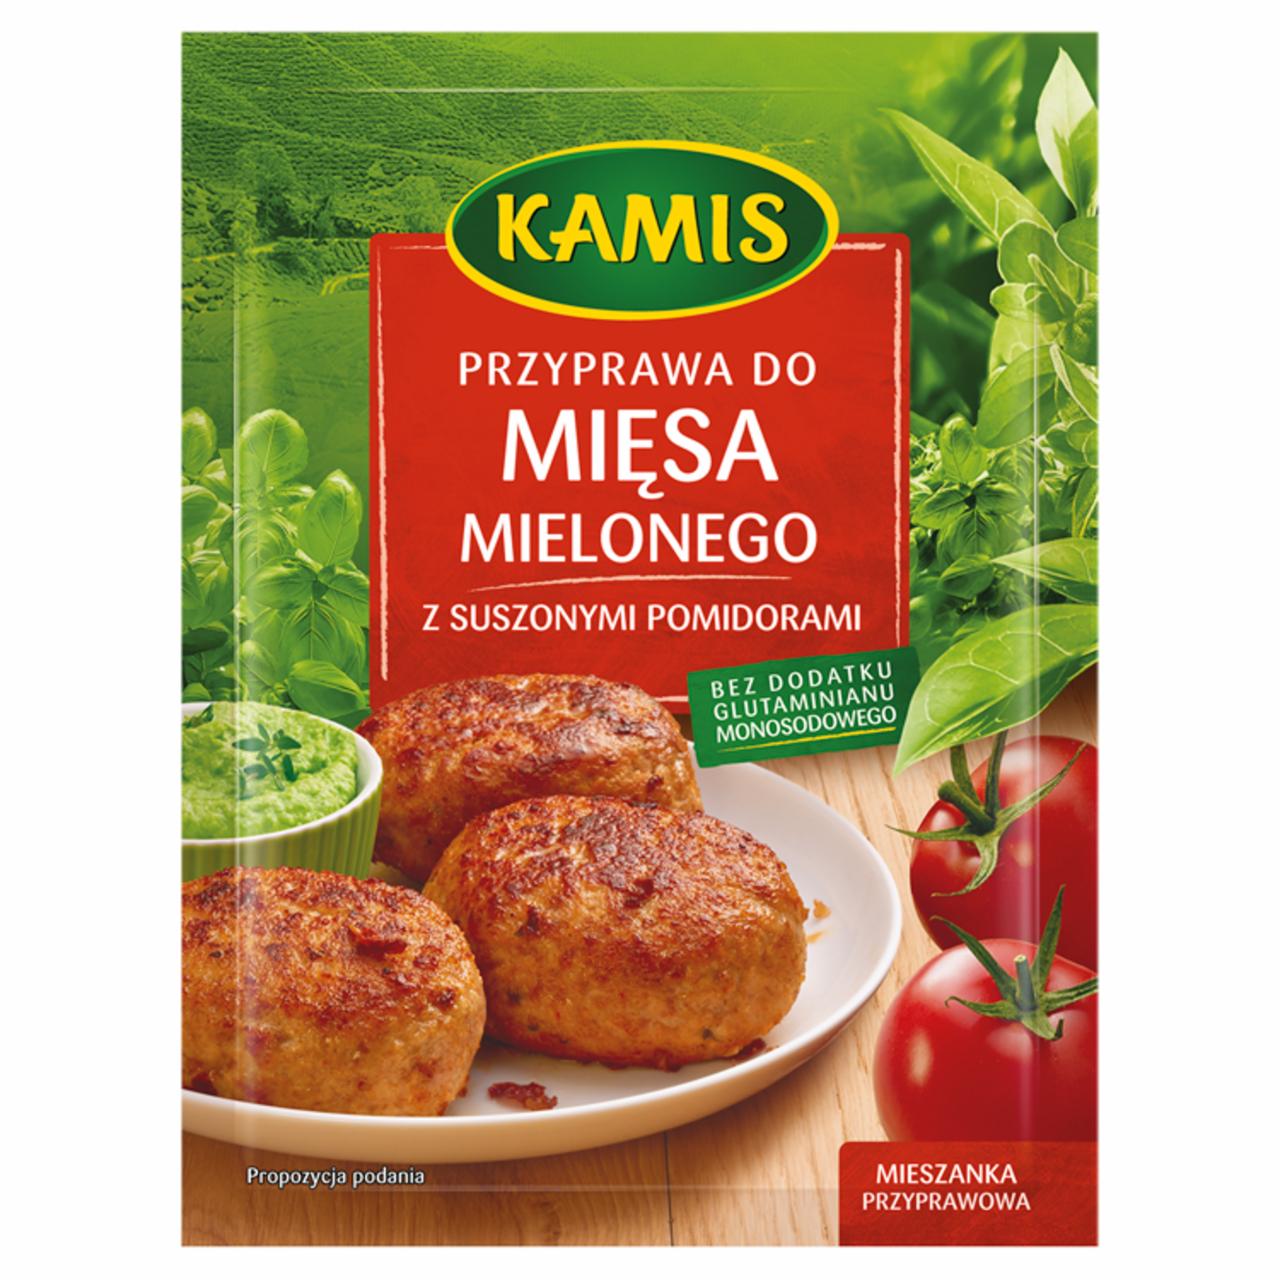 Zdjęcia - Kamis Przyprawa do mięsa mielonego z suszonymi pomidorami Mieszanka przyprawowa 20 g